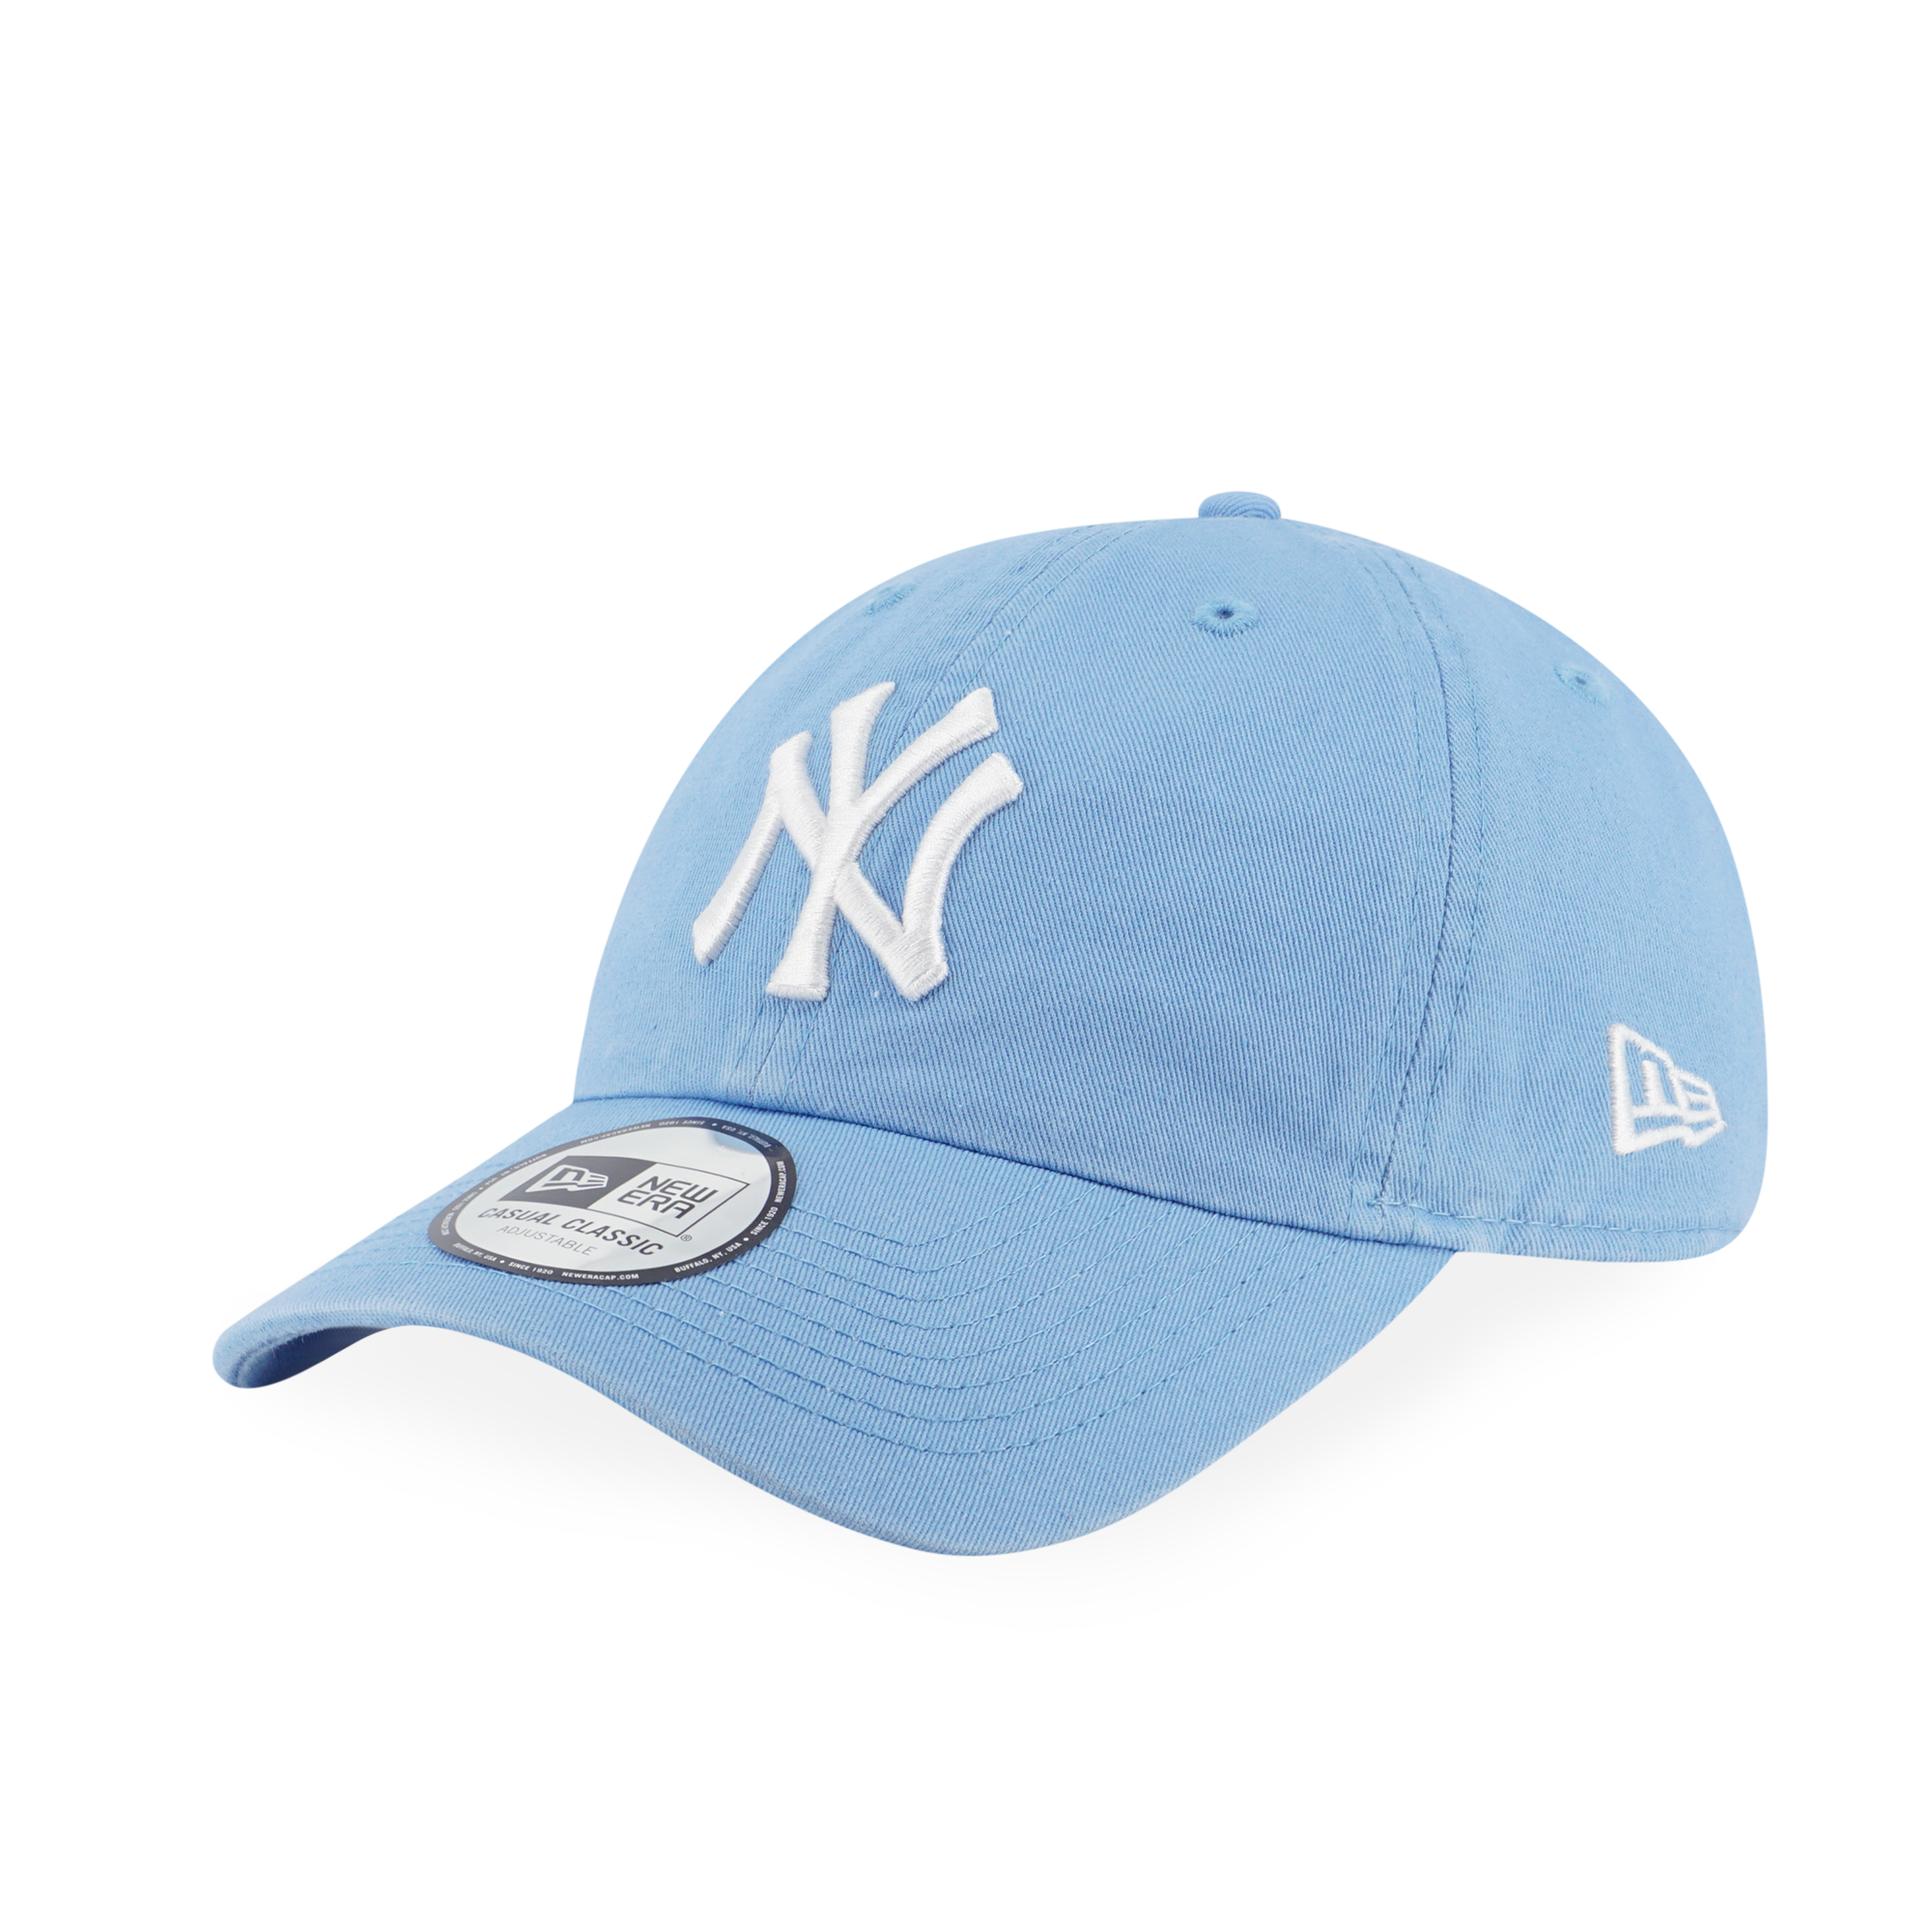 NEW YORK YANKEES SKY BLUE CASUAL CLASSIC CAP